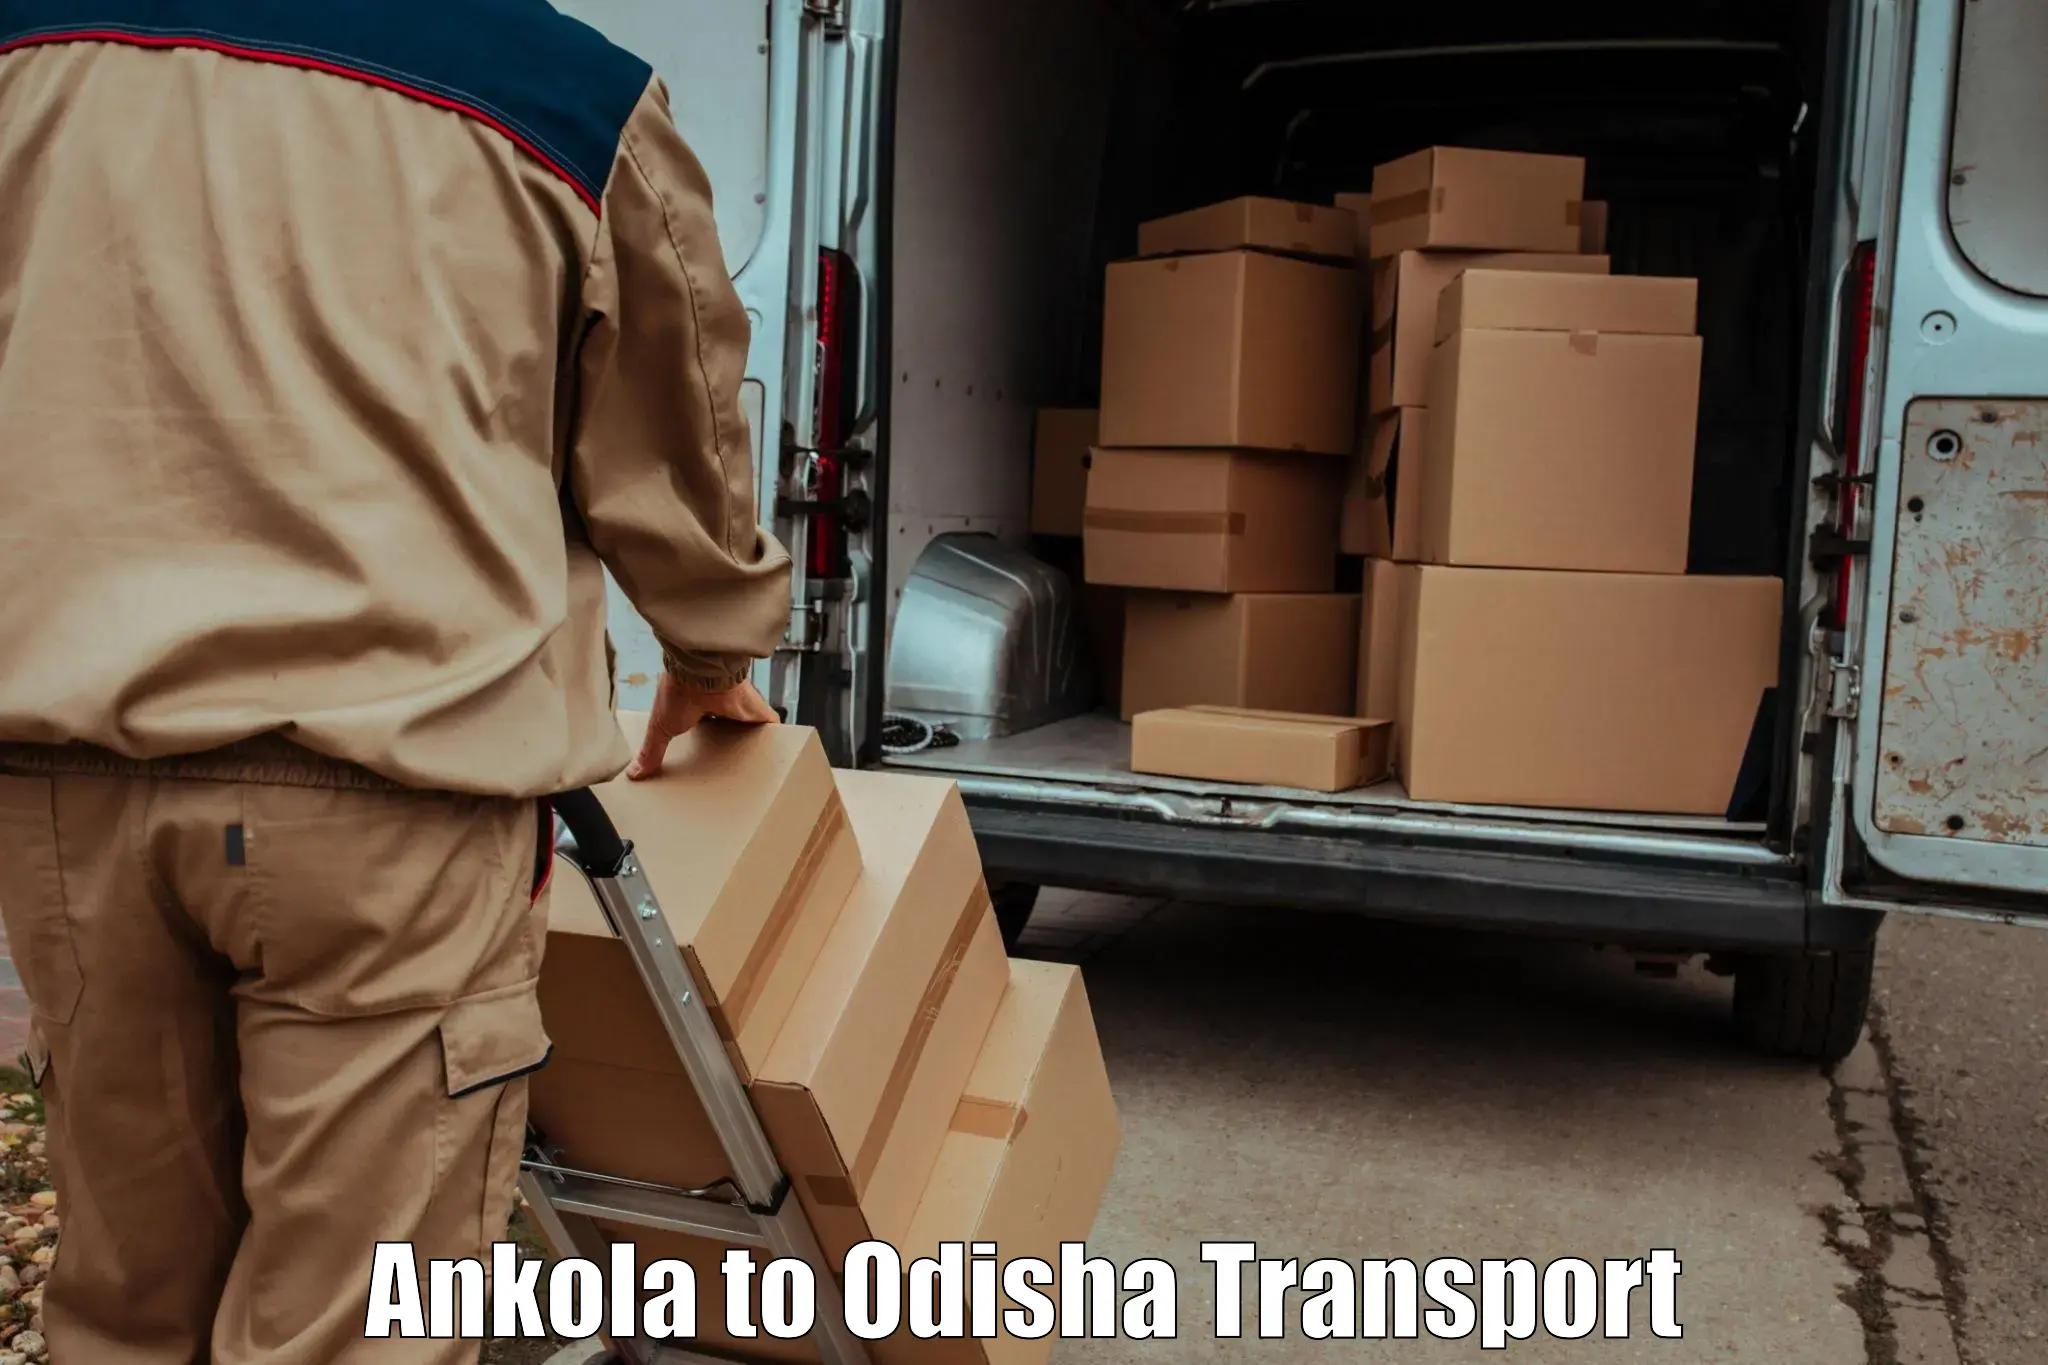 Shipping services Ankola to Raighar